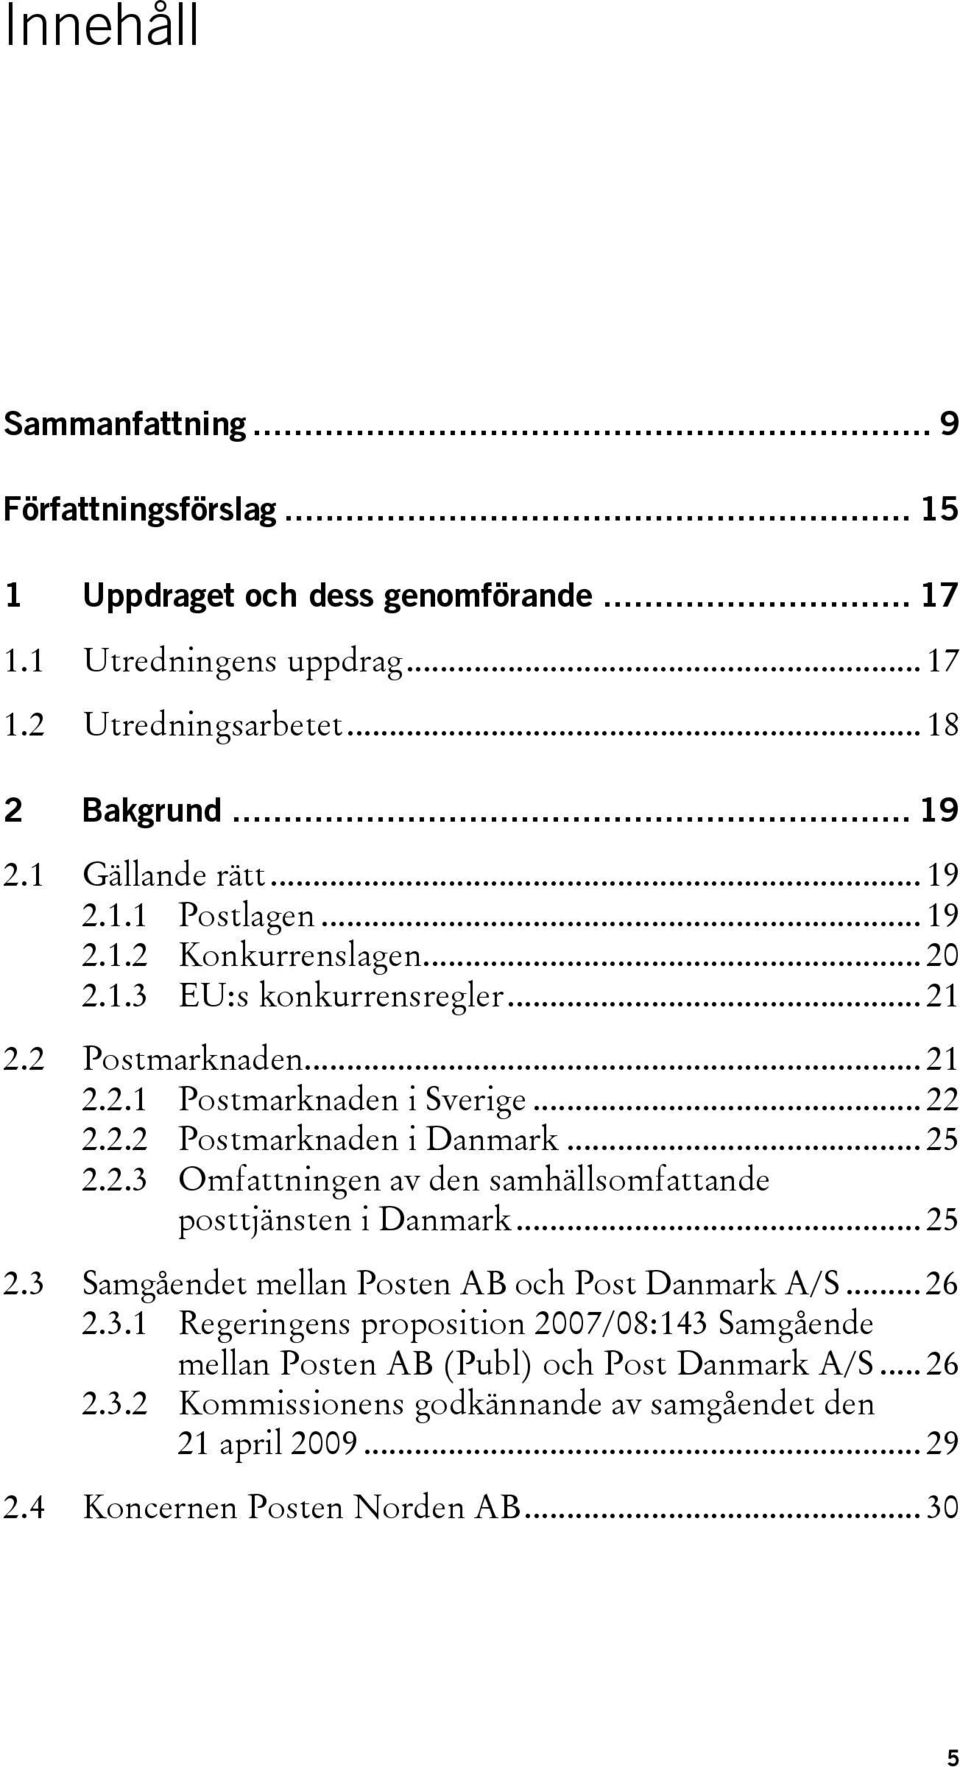 .. 25 2.2.3 Omfattningen av den samhällsomfattande posttjänsten i Danmark... 25 2.3 Samgåendet mellan Posten AB och Post Danmark A/S... 26 2.3.1 Regeringens proposition 2007/08:143 Samgående mellan Posten AB (Publ) och Post Danmark A/S.